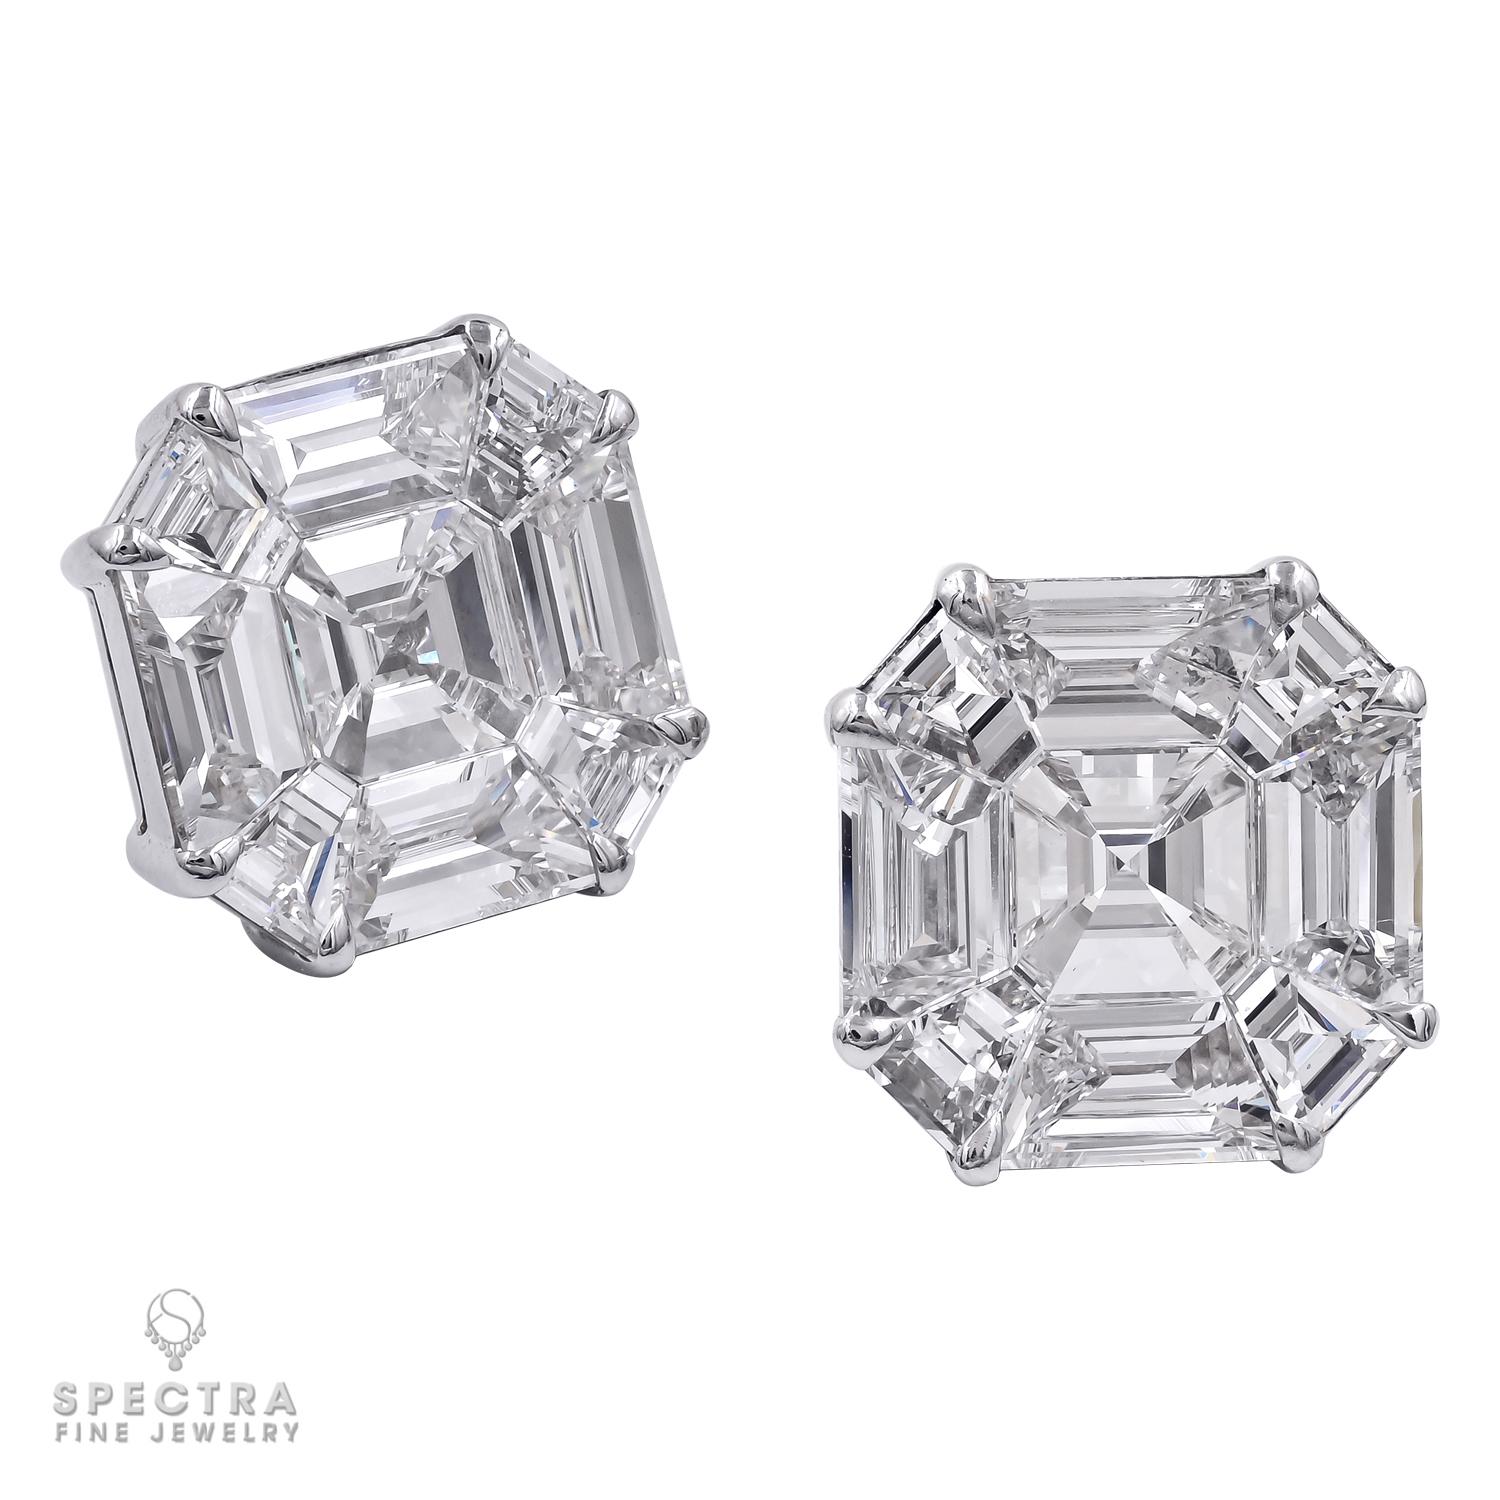 Diese Spectra Fine Jewelry Illusion Asscher-shape Diamond Stud Earrings, die im 21. Jahrhundert hergestellt wurden, suggerieren etwas viel Größeres. Das Paar Ohrringe ist aus 18 Karat Weißgold gefertigt und hat ein geschätztes Karatgewicht von